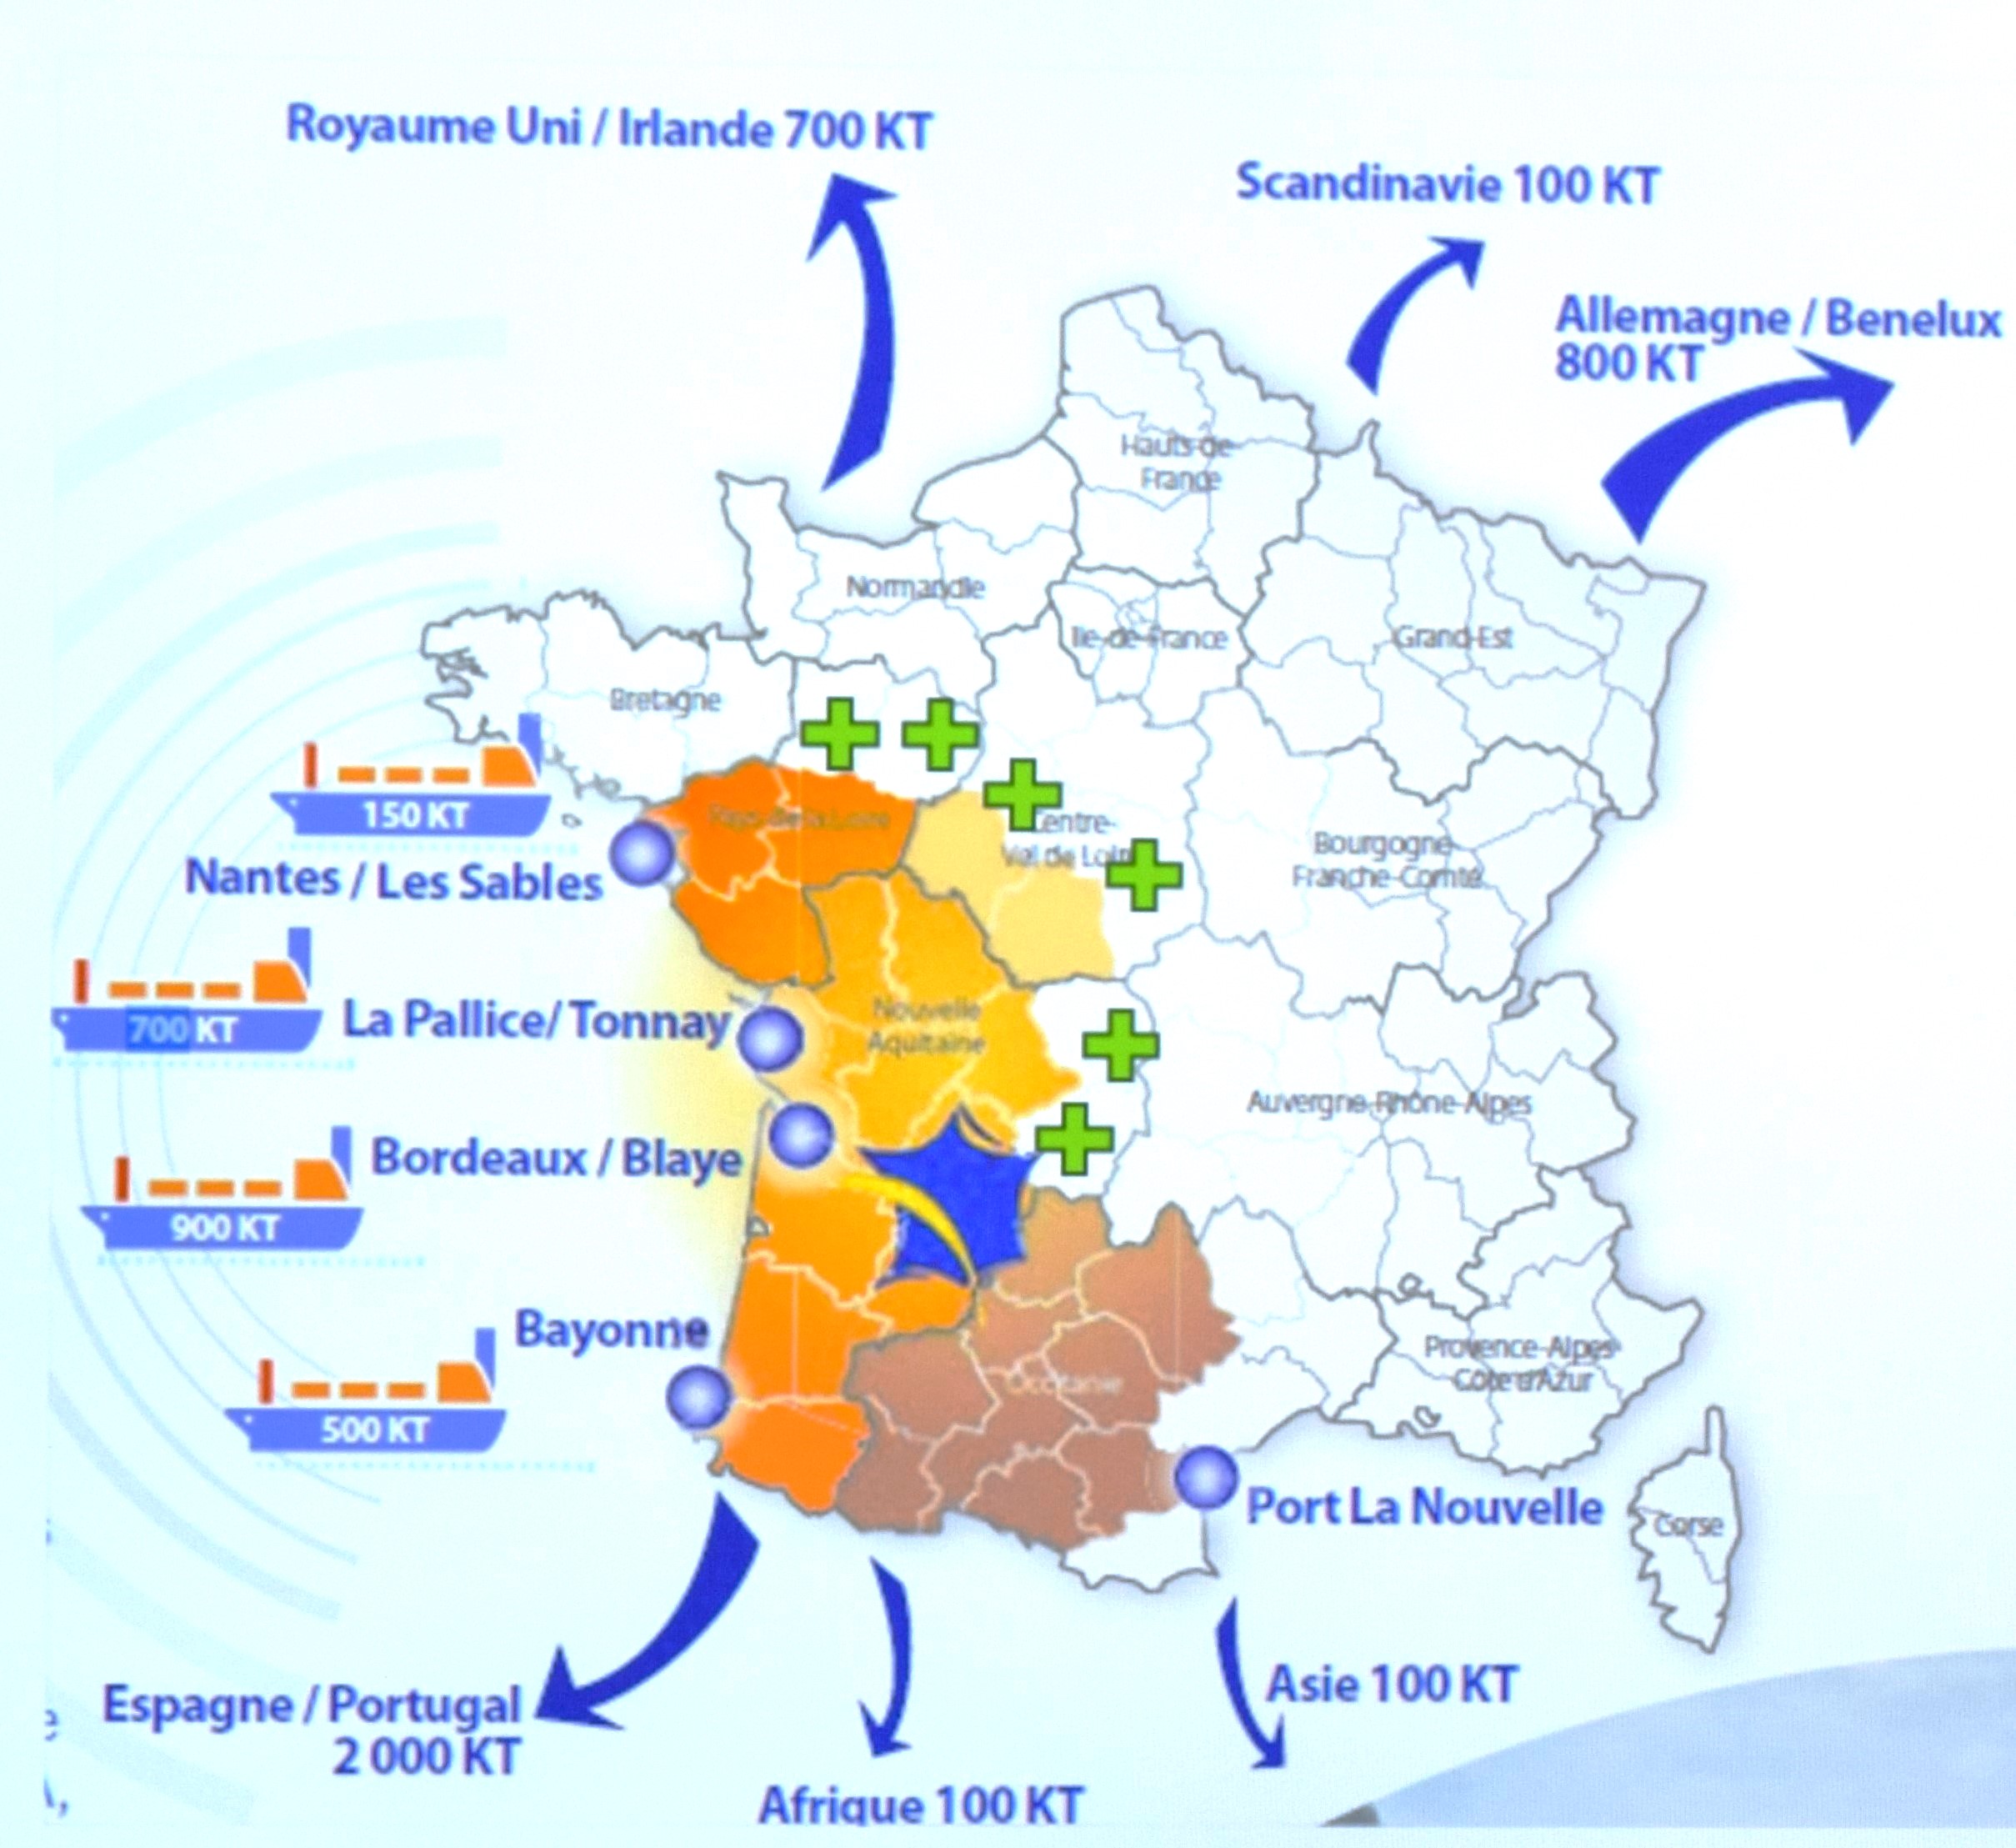 La Charte qualité maïs classe A, suite à l'extension à six nouveaux départements, se concentre sur 30 départements dans un large quart sud-ouest de la France, avec des ouvertures à l'international grâce à quatre ports majeurs le long de la façade Atlantique.